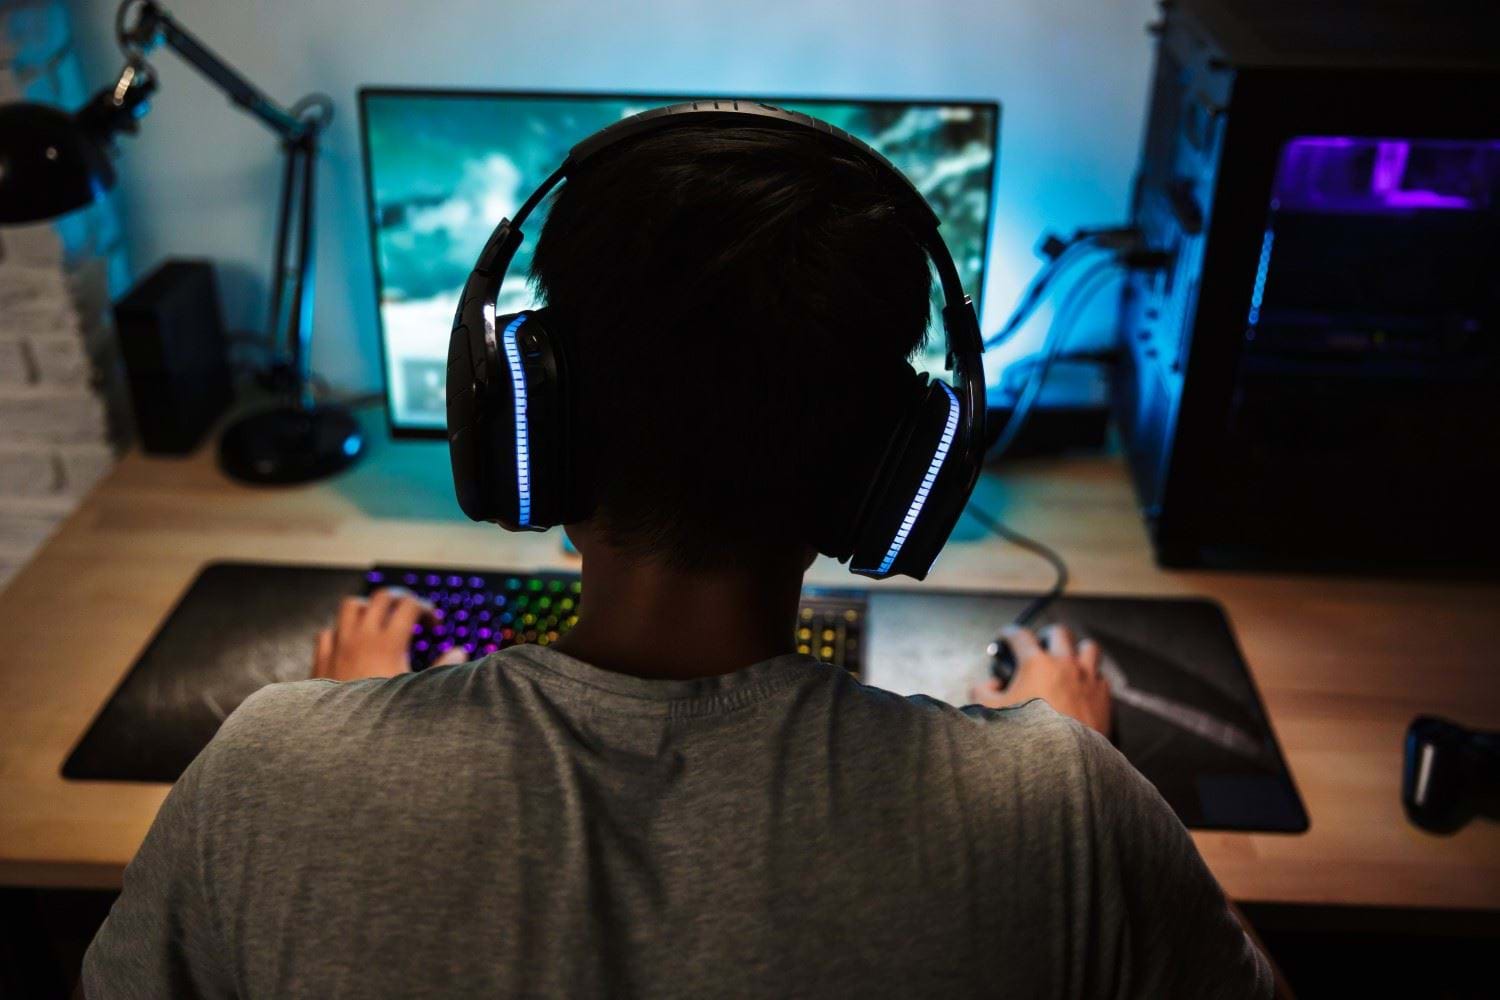 Ung mann sittende med ryggen til foran en datamaskin og spiller et spill. Foto: Colourbox.com